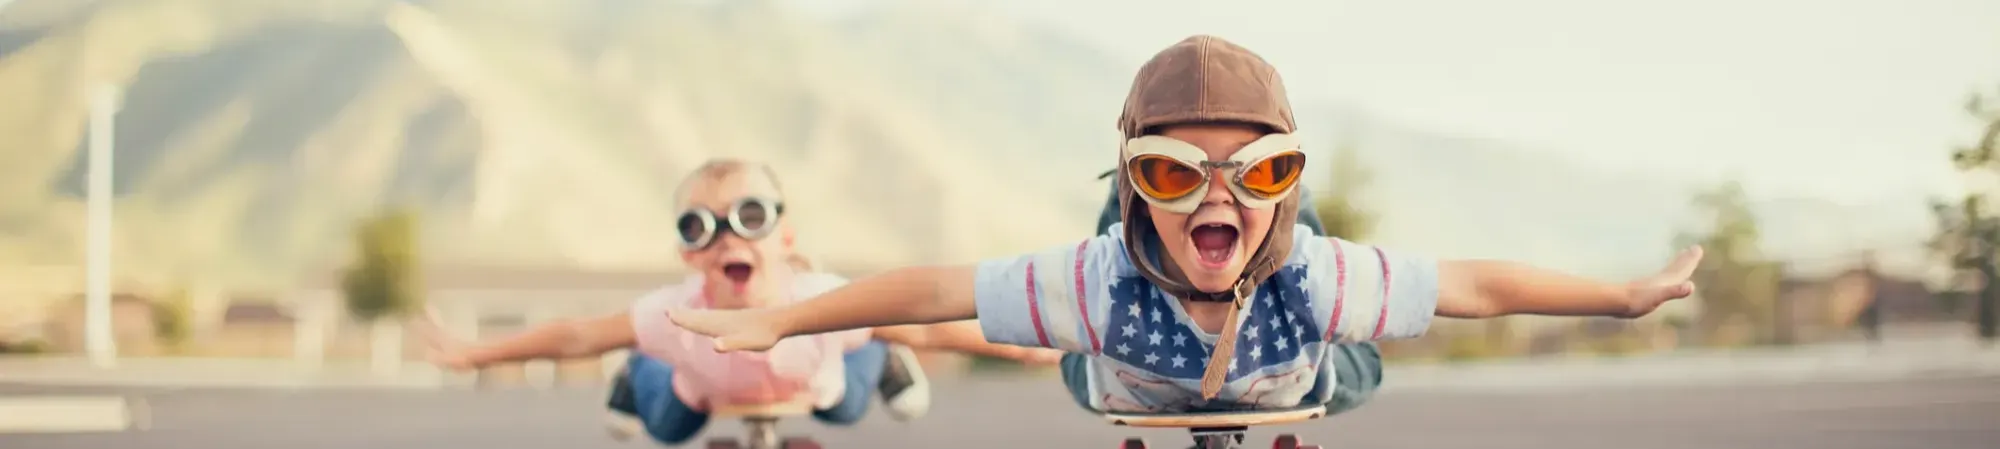 kinderen die doen alsof ze vliegen op een skateboard, met een piloten muts en bril